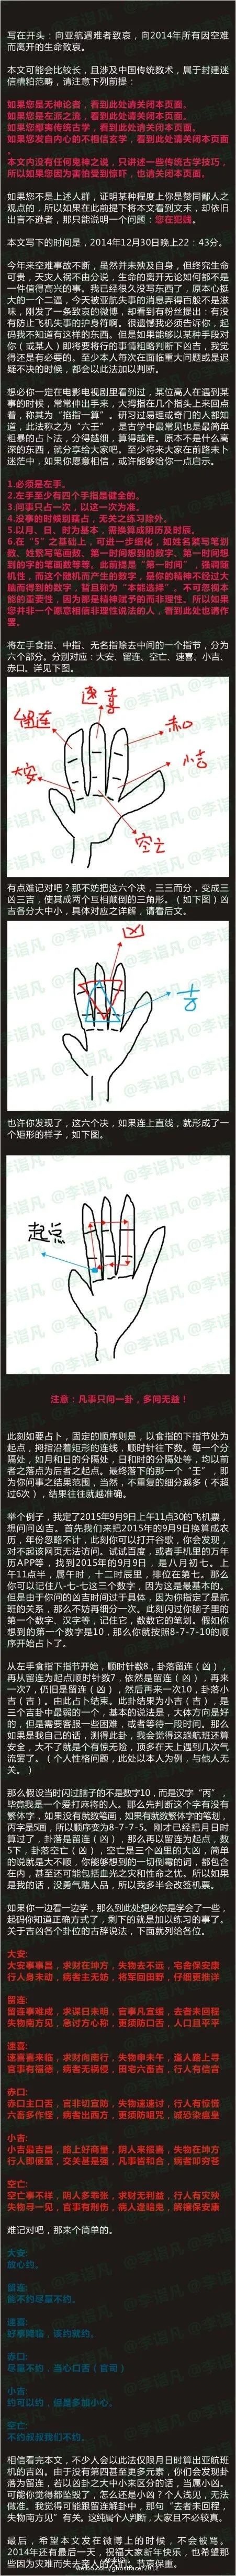 郑博士：左手食指、中指和无名指的算法